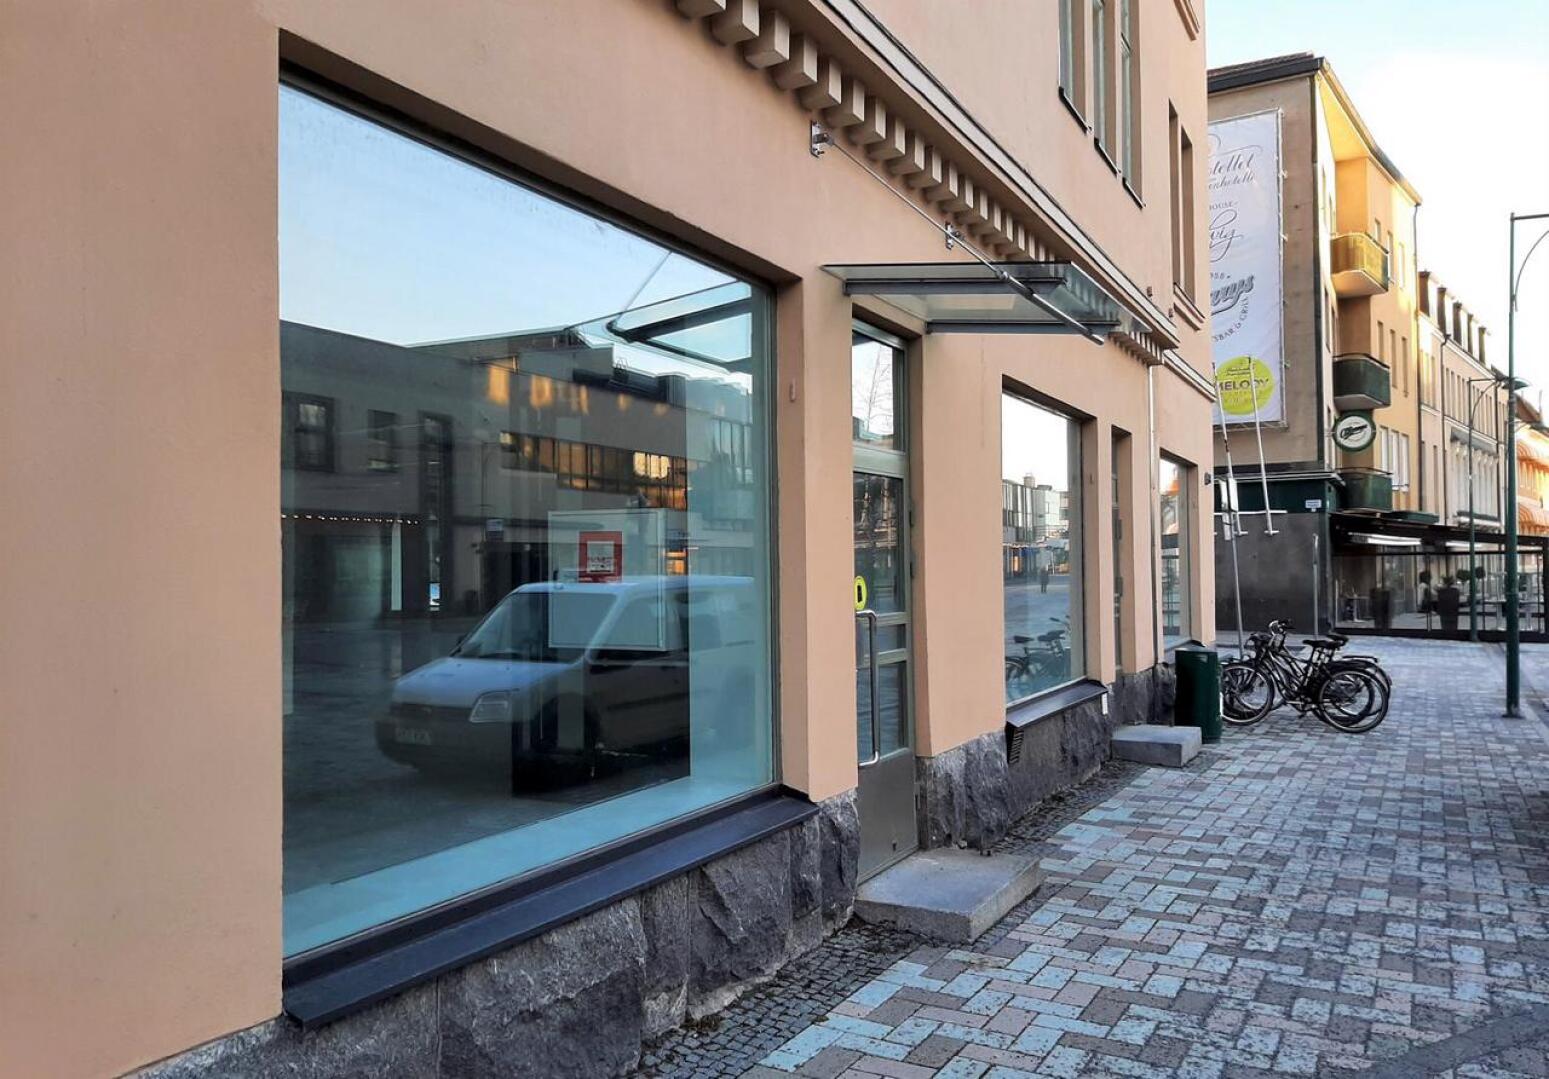 Åströmin kiinteistöön aletaan talven aikana rakentaa pikaruokaravintolaa. Hesburger harkitsee myös hotellia taloon.